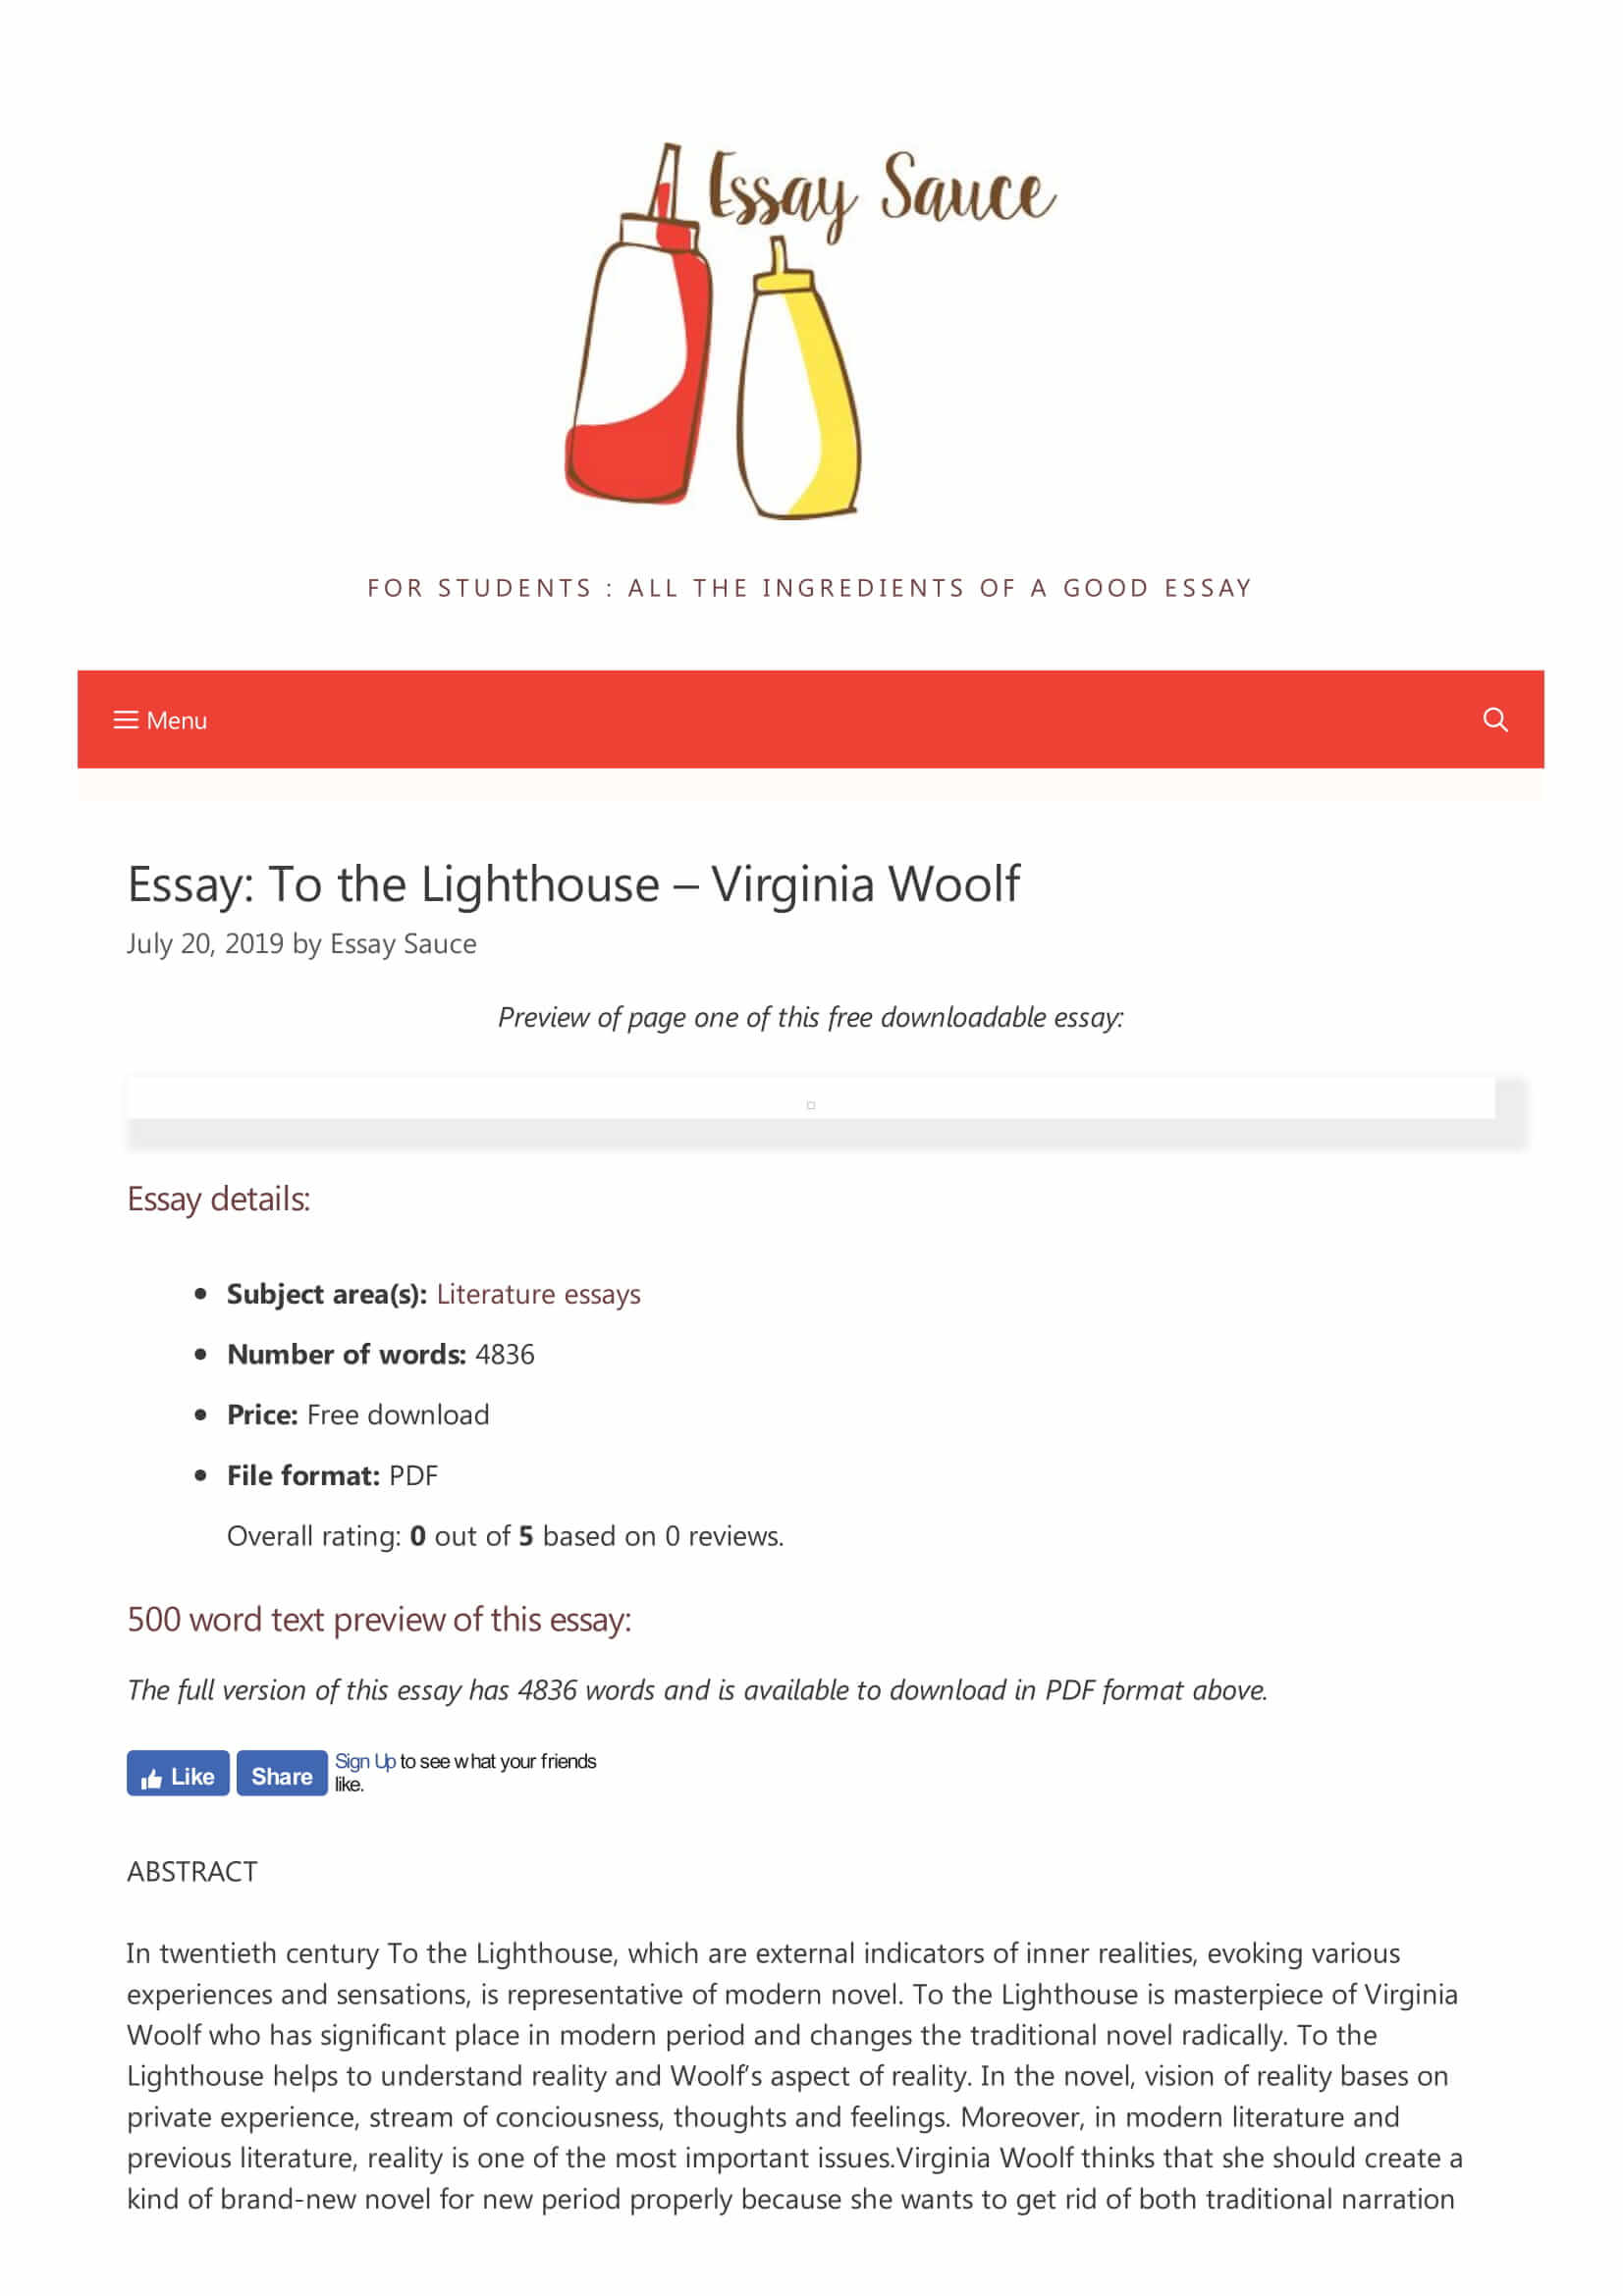 essay on virginia woolf